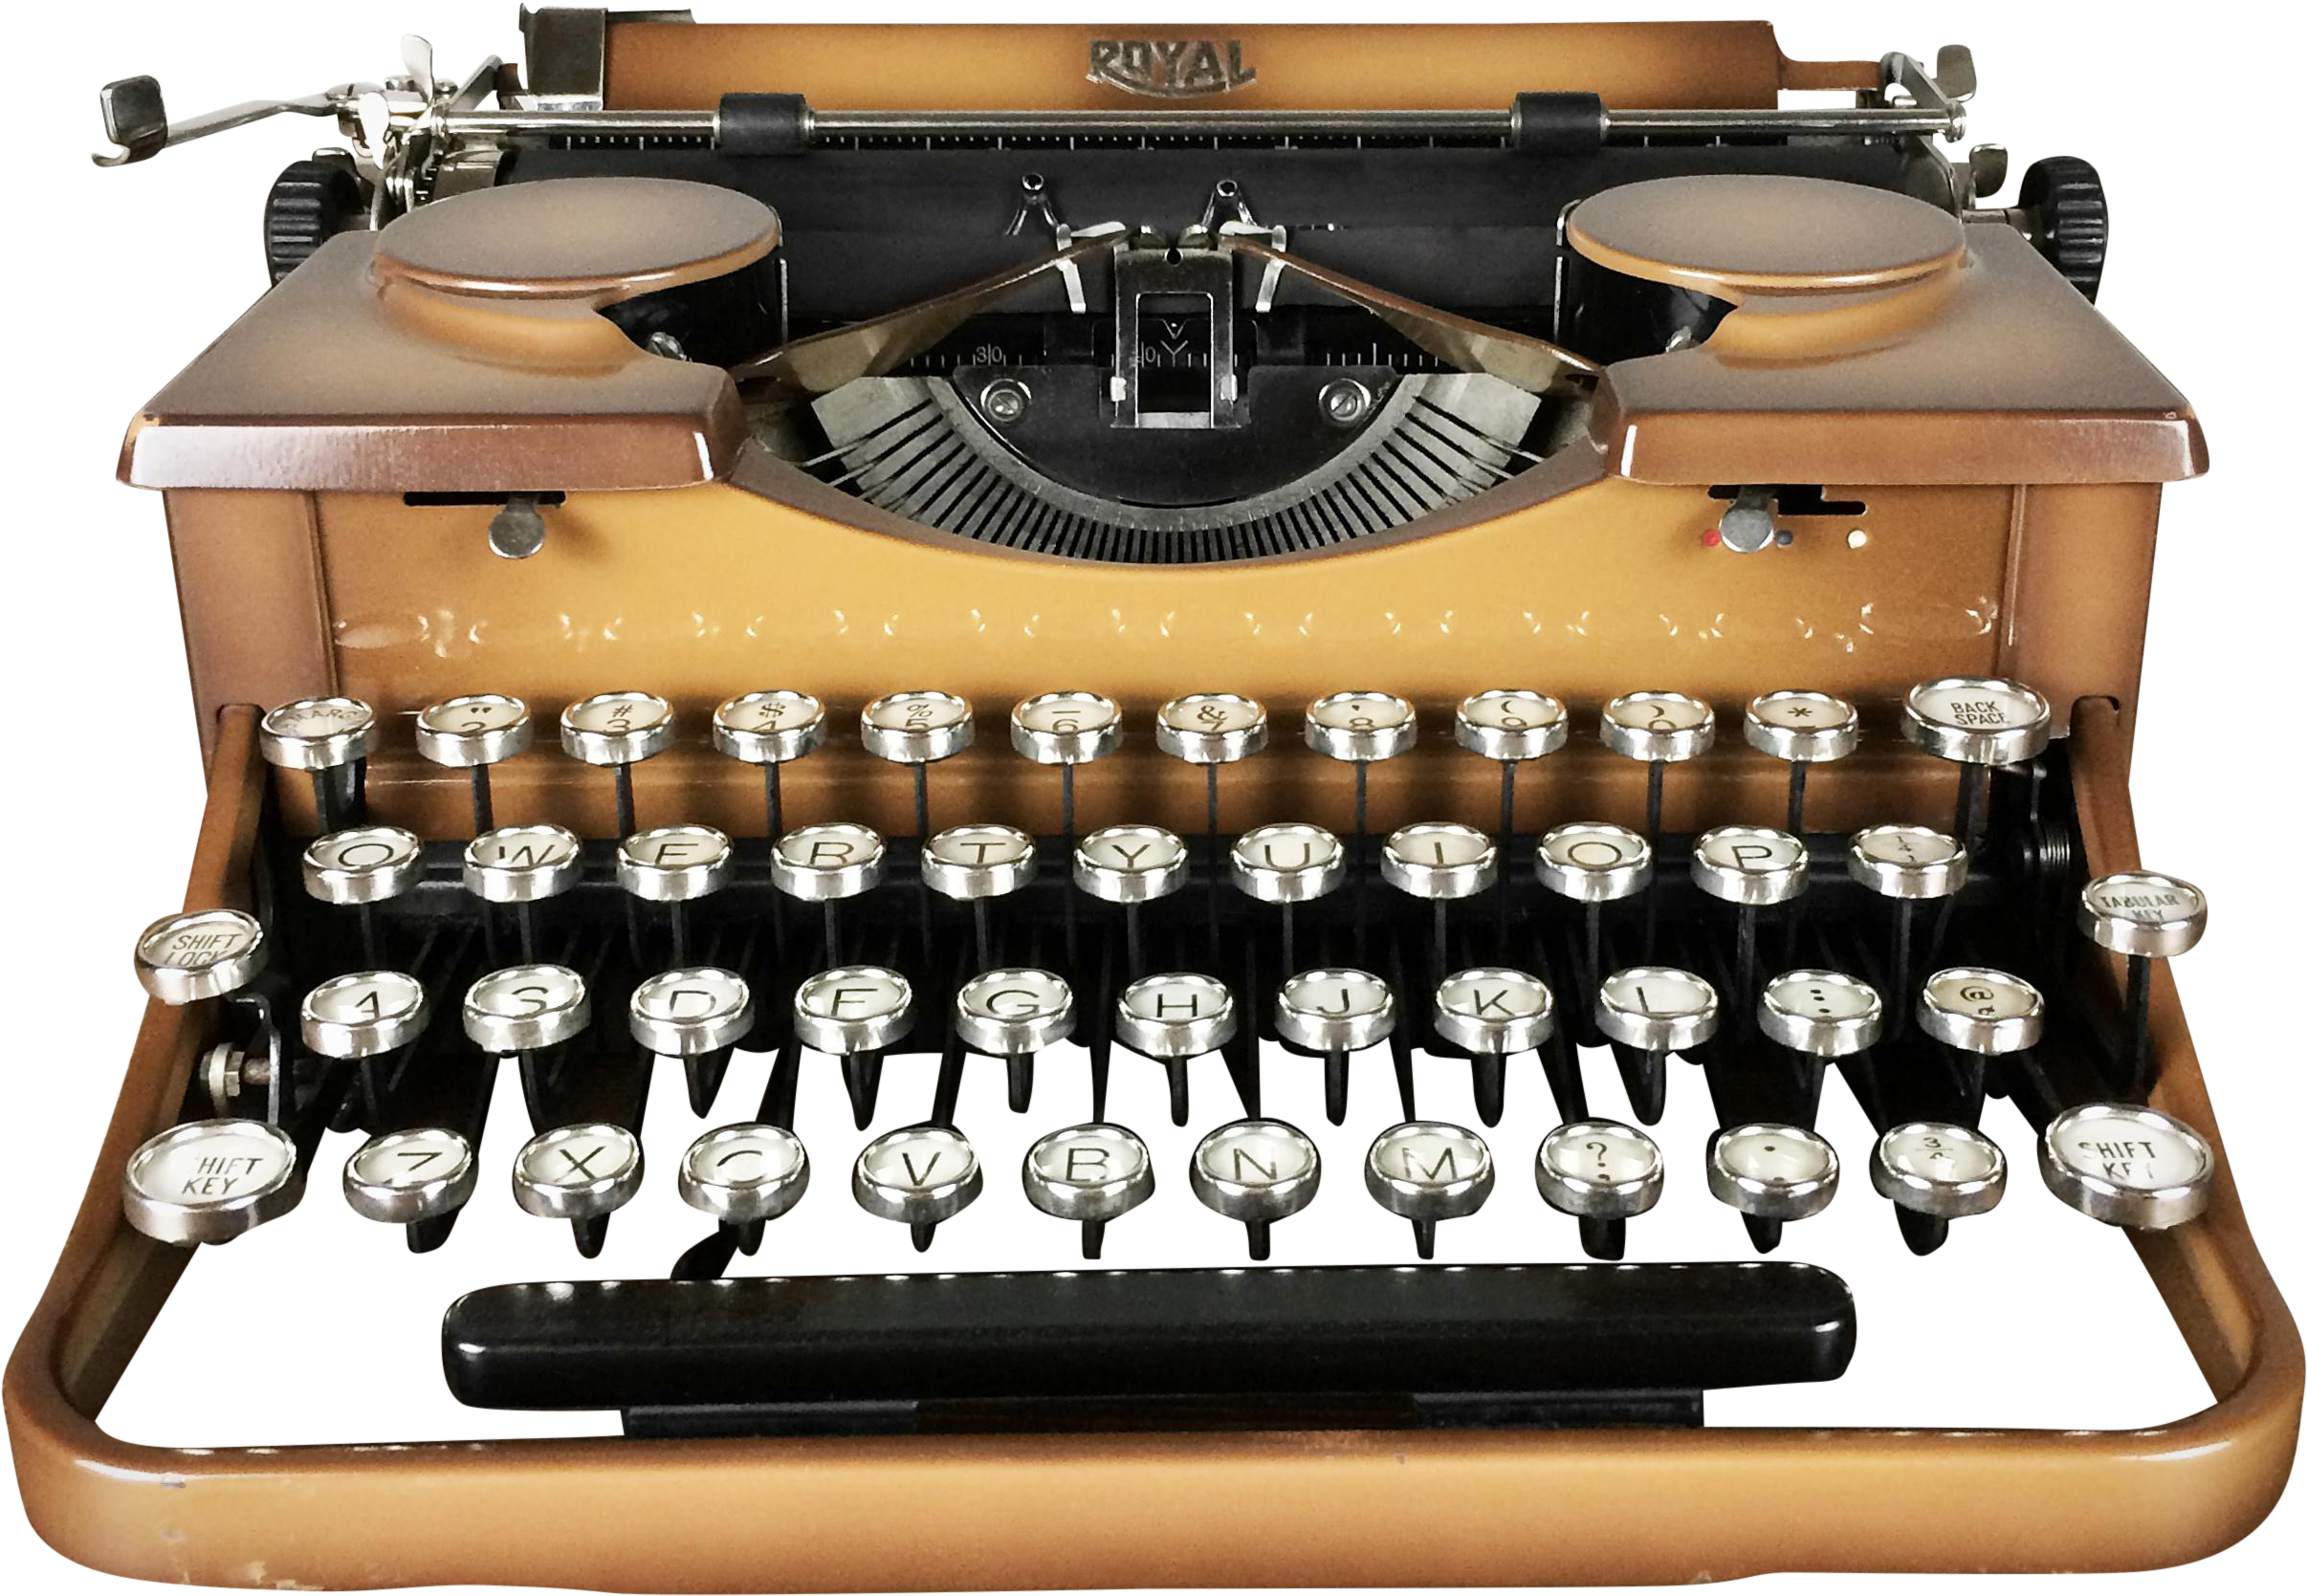 Vintage Typewriter Png Svg Royalty Free - 1930s (2679x1853), Png Download